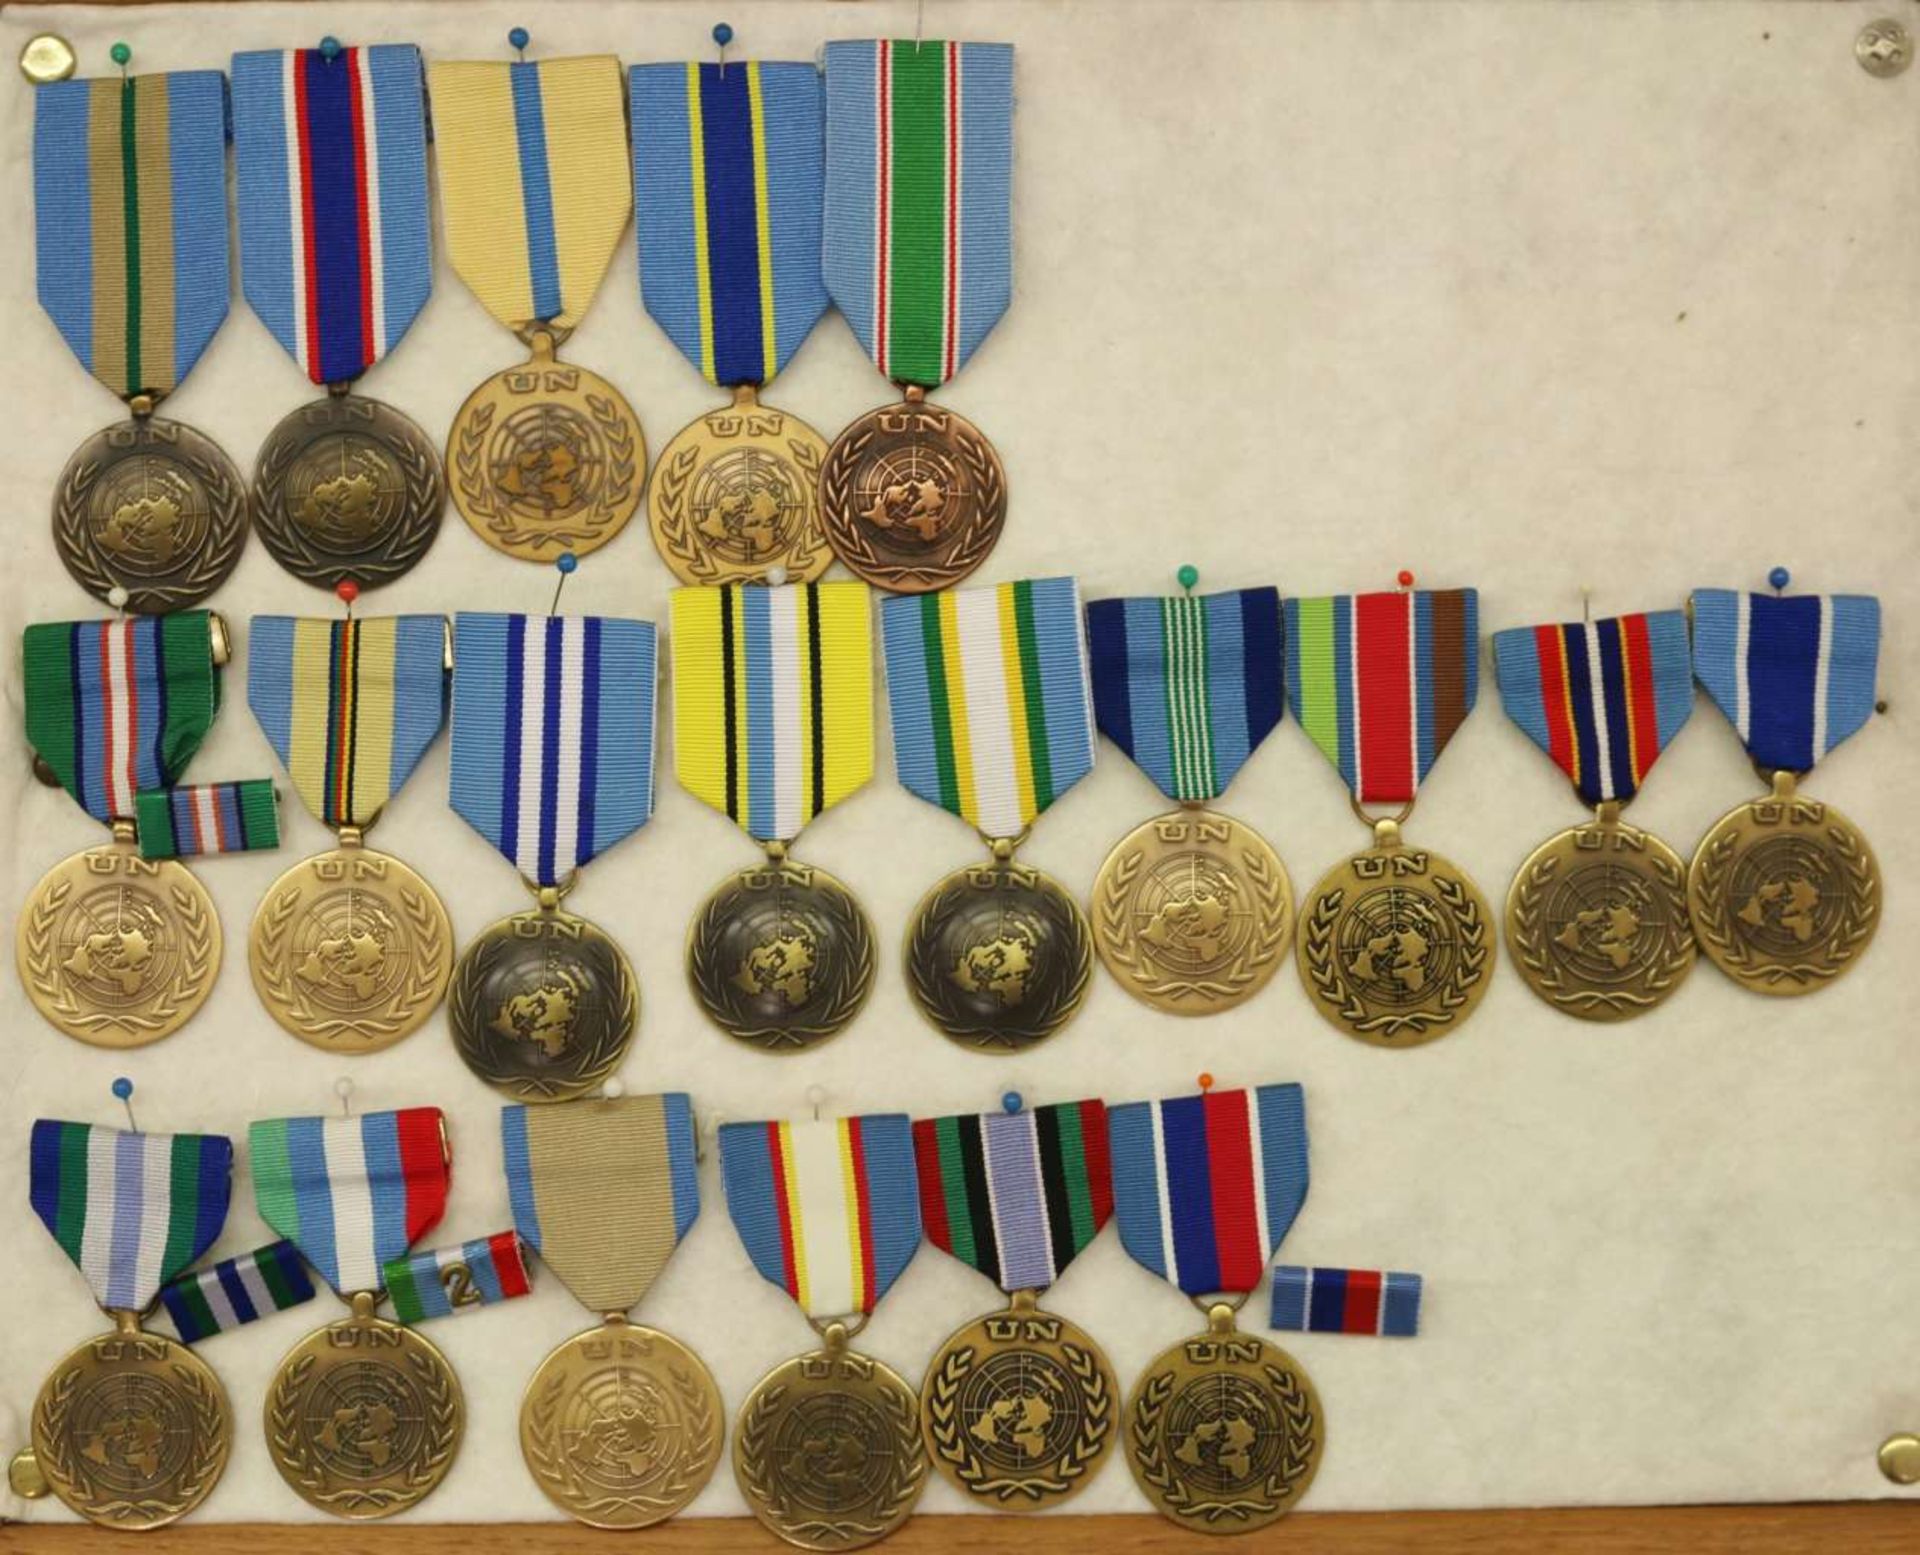 Sammlung von ca. 120 Orden und Medaillen, USA und UN. - Image 2 of 3